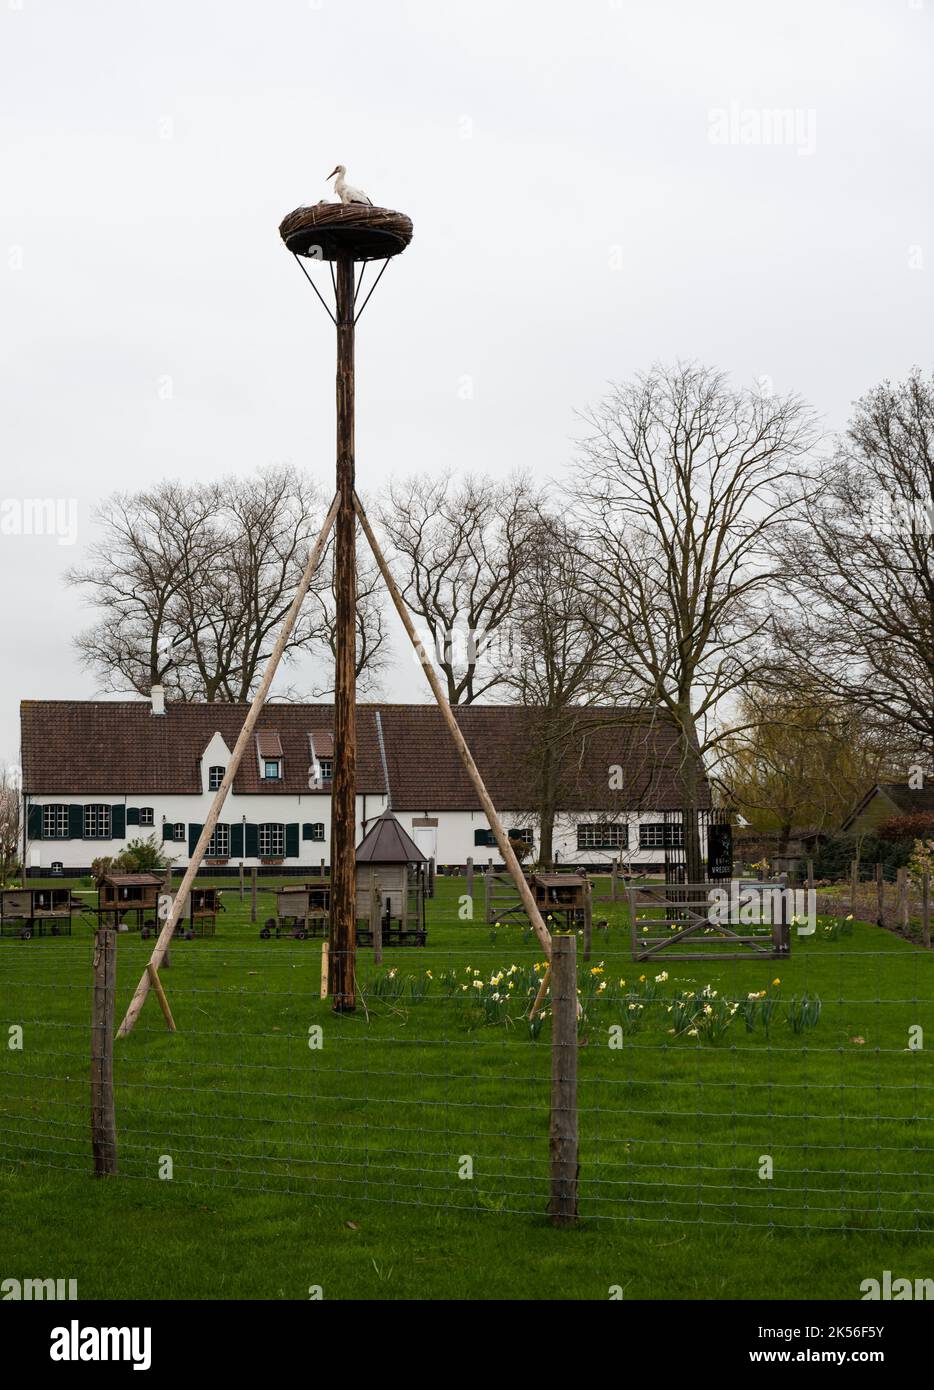 Damme, Flämische Region - Belgien - 04 03 2021 Storchennest vor einer malerischen Dorflandschaft Stockfoto